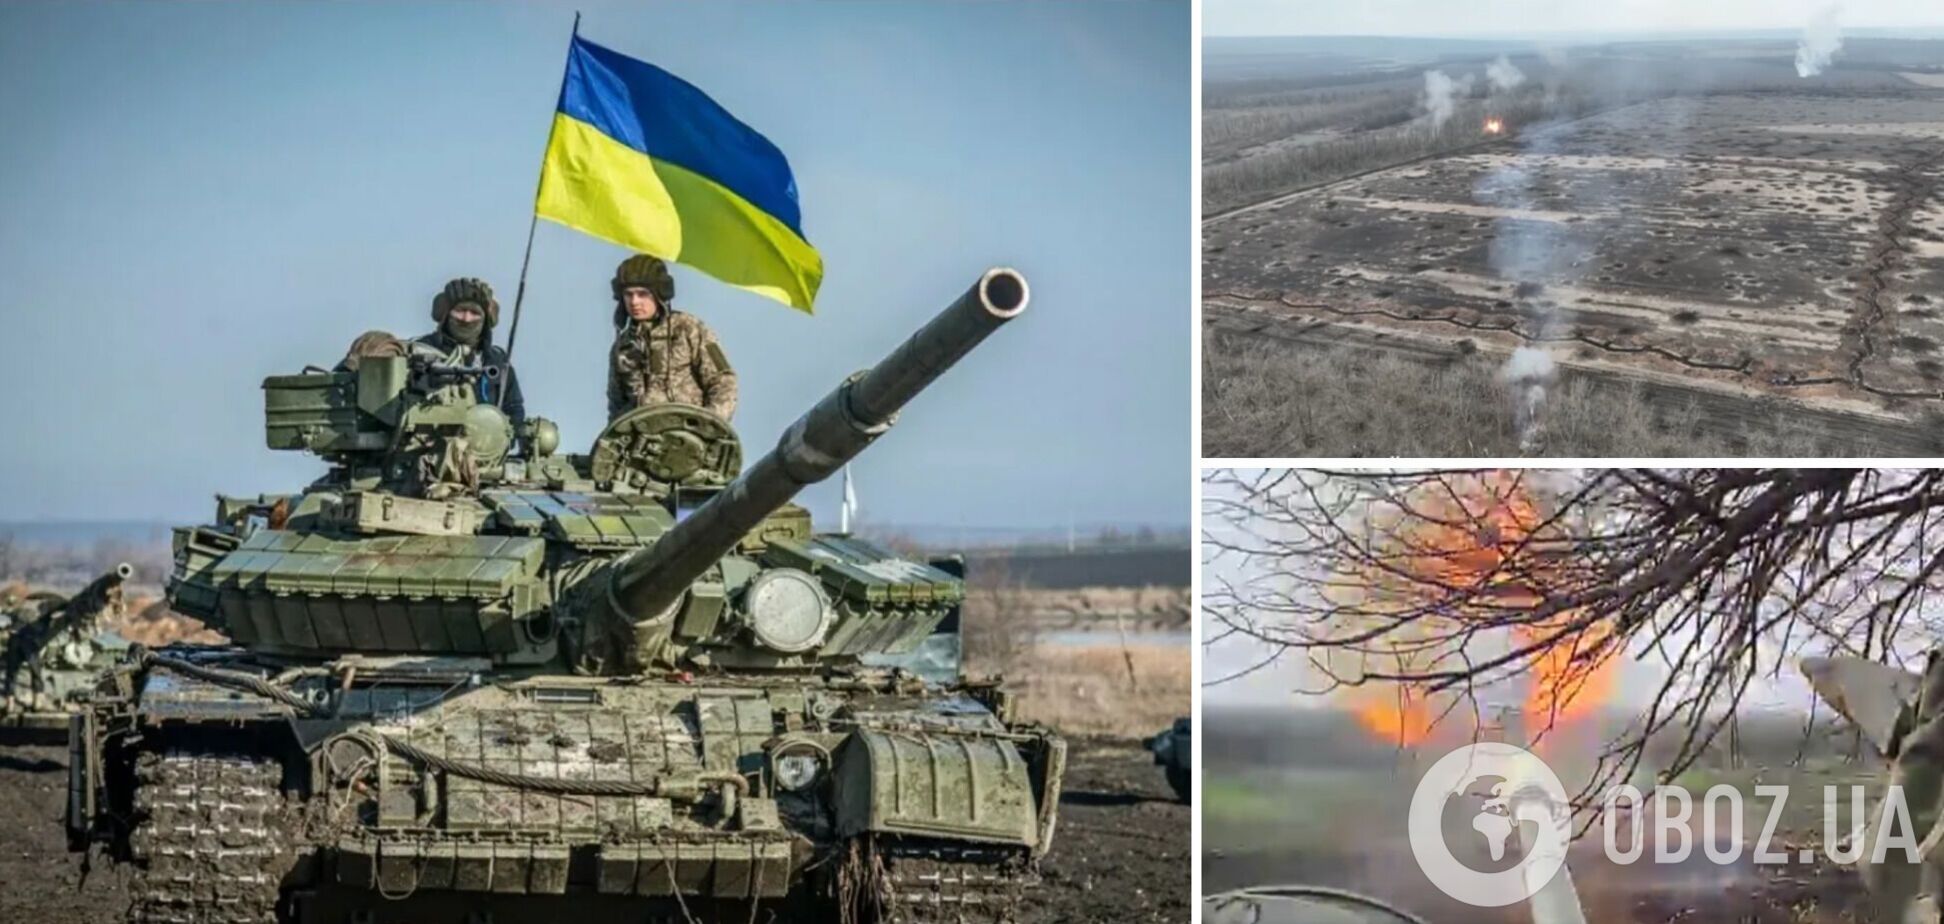 'Не я б'ю, верба б'є!' Українські танкісти розбили ворога, який підійшов 'на відстань витягнутої руки'. Відео